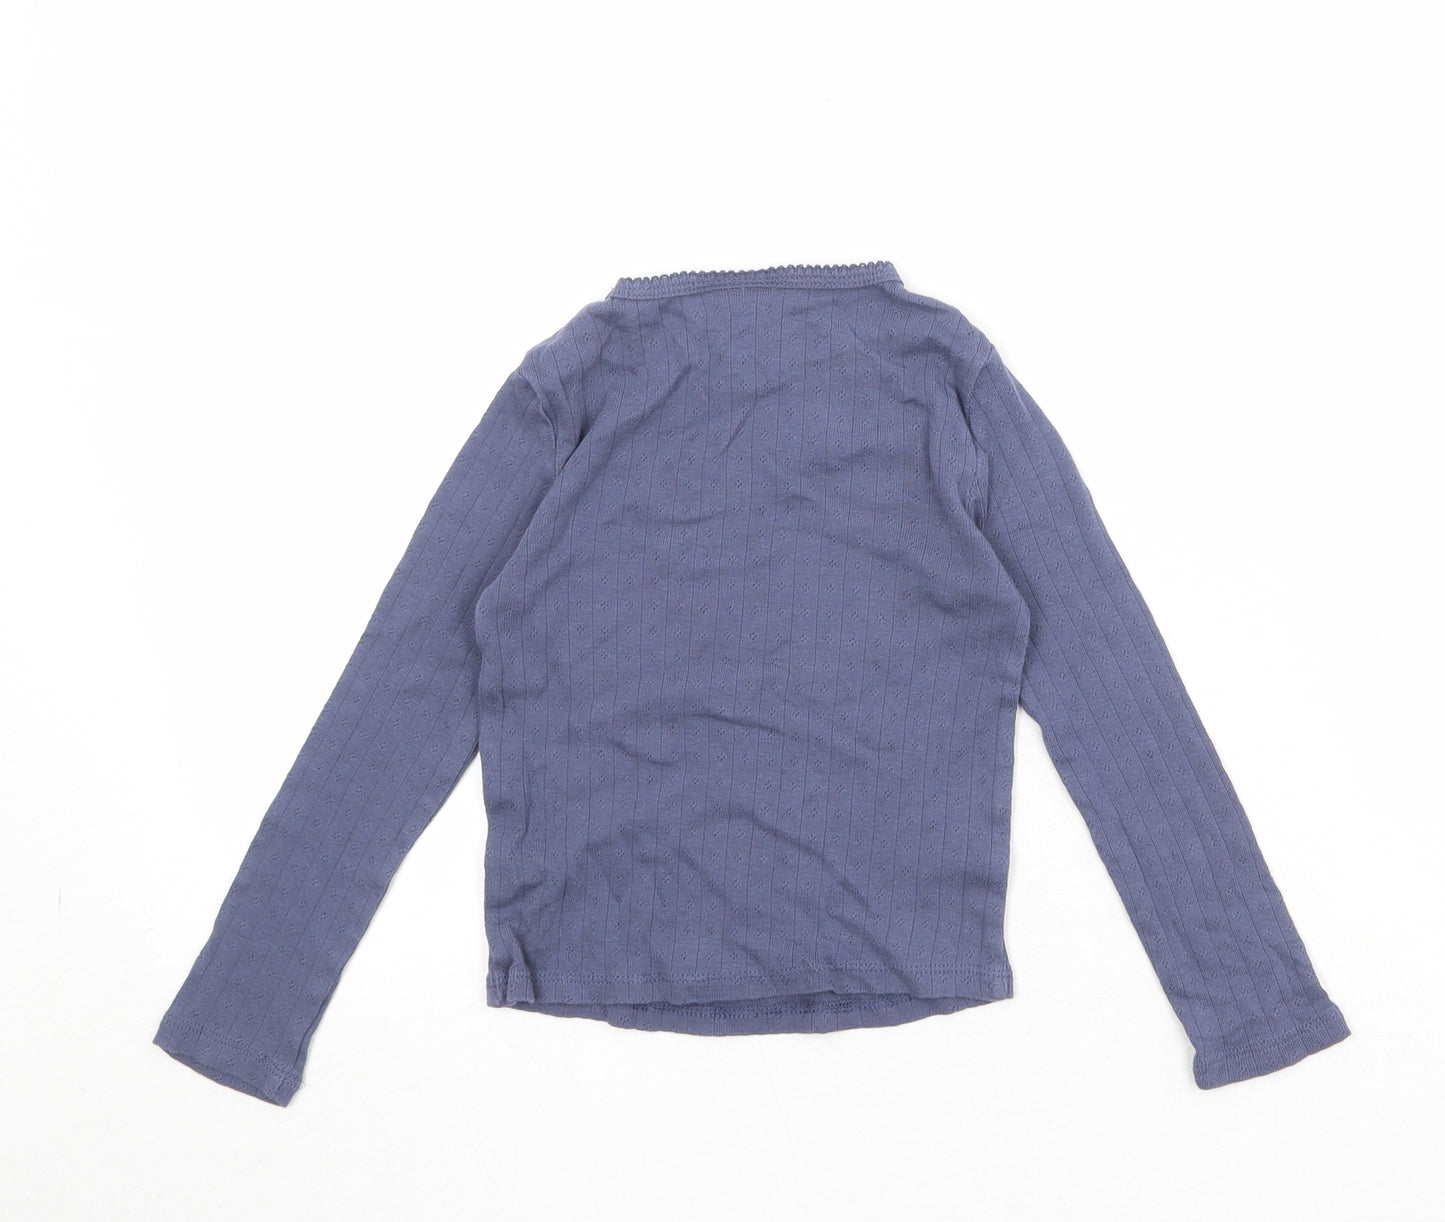 Zara Girls Blue 100% Cotton Basic T-Shirt Size 6 Years Round Neck Pullover